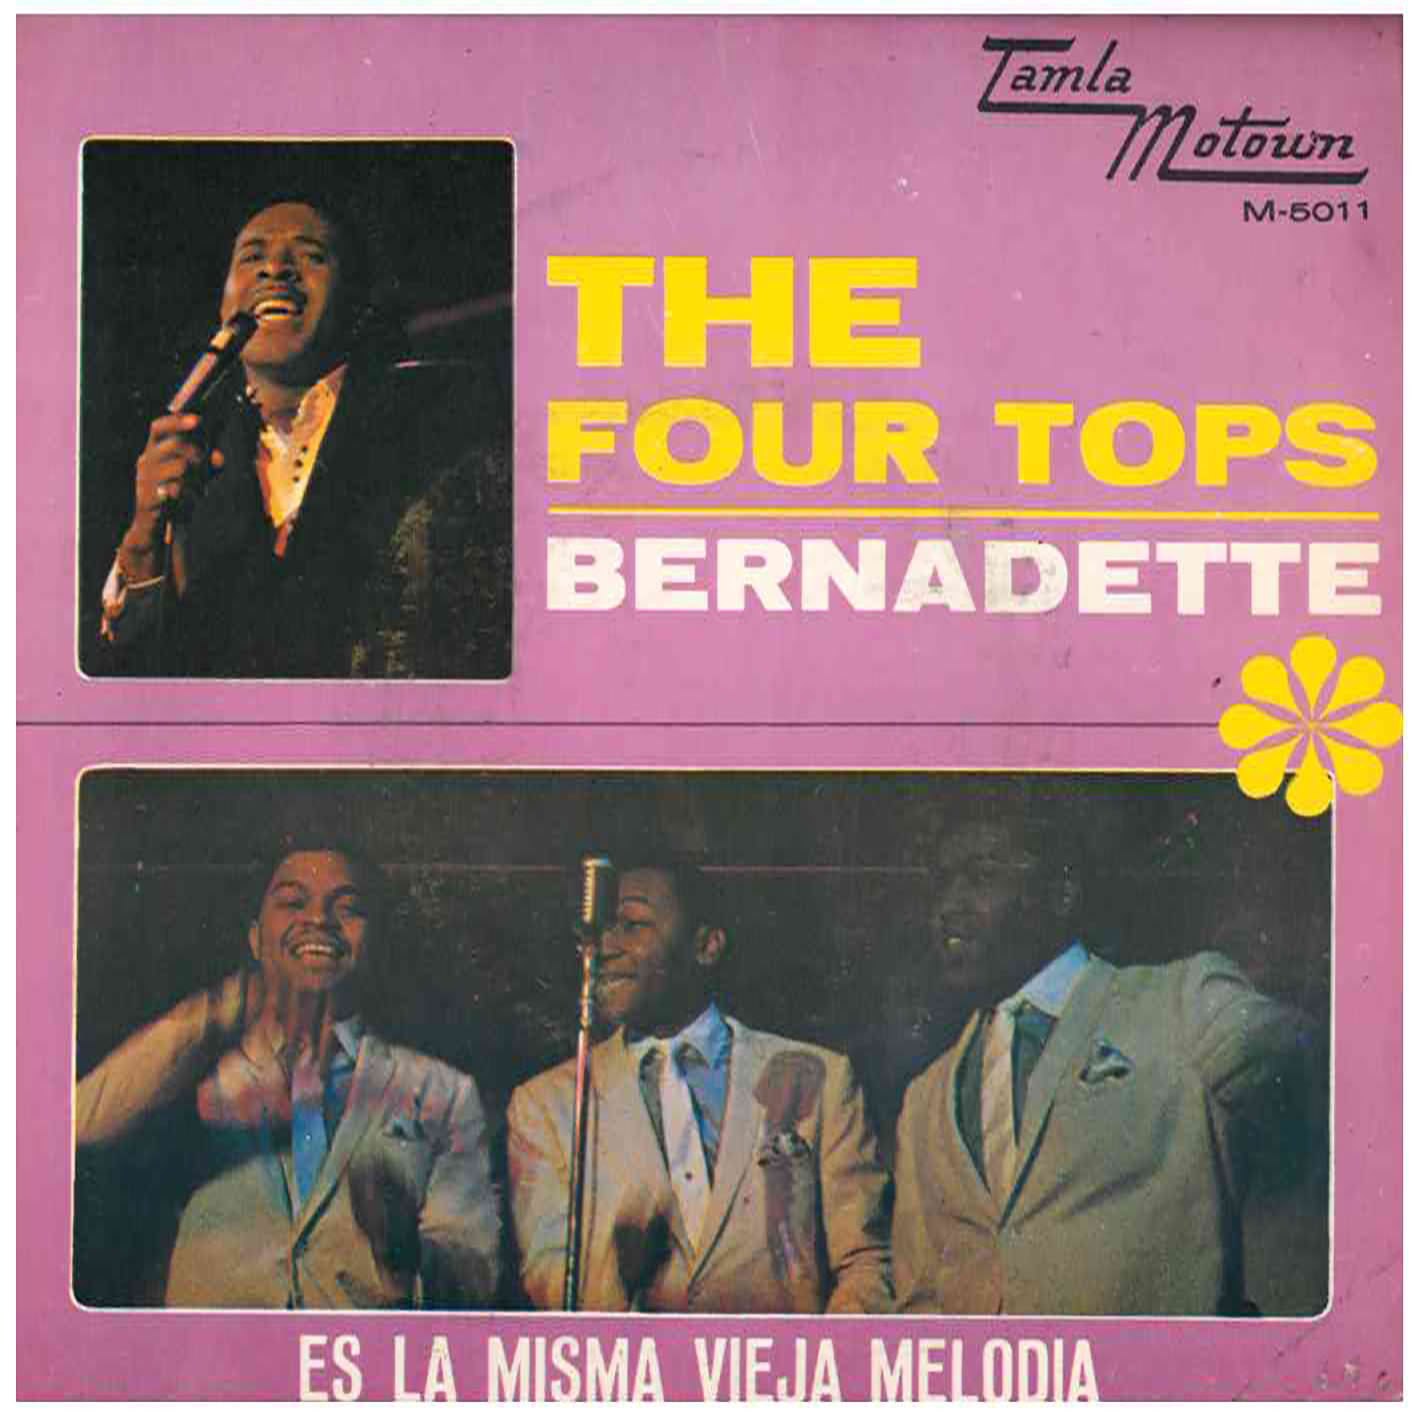 The Four Tops – Bernadette